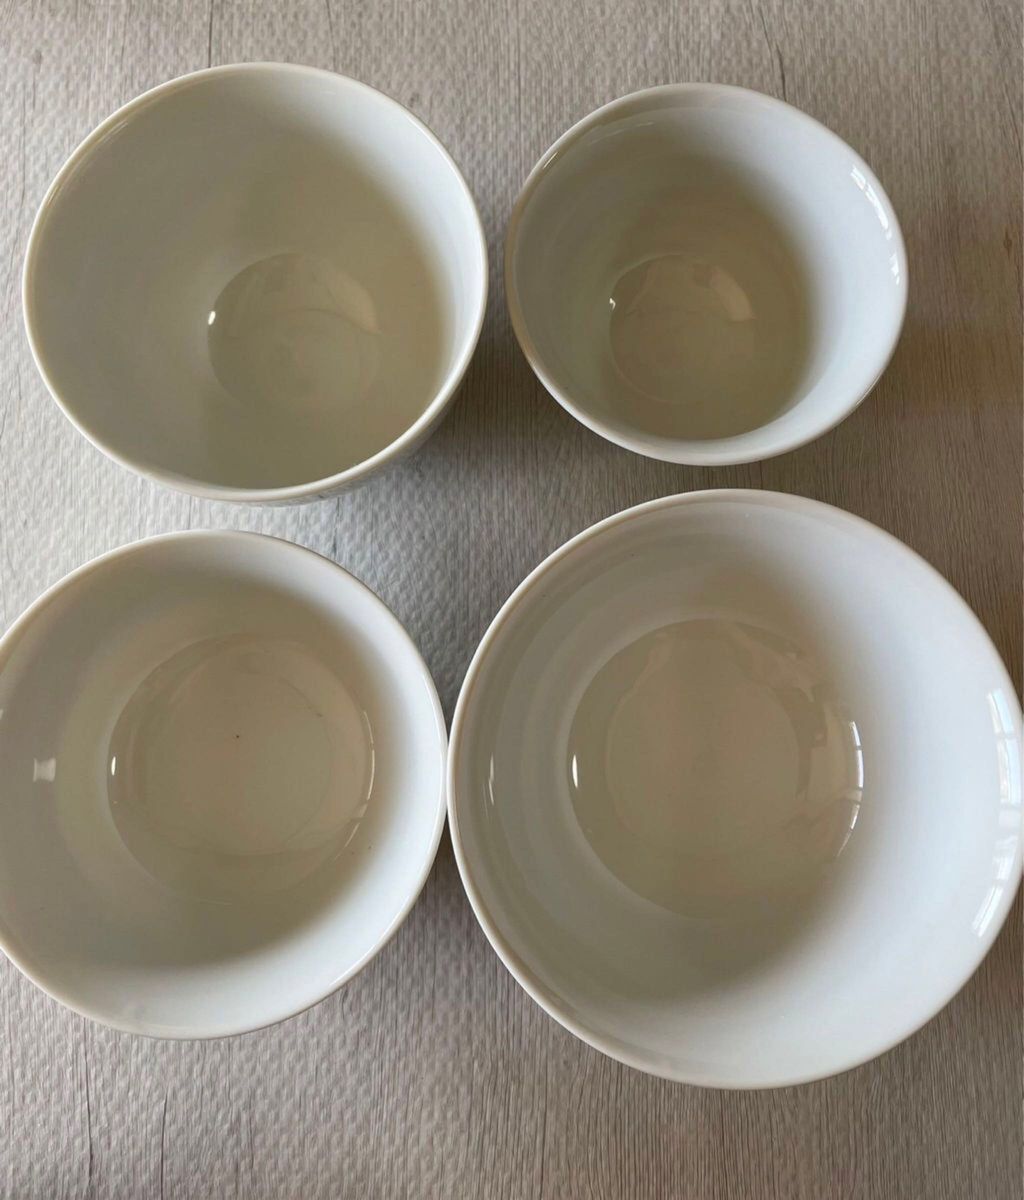 美濃焼 日本製 新品 陶磁器 丸鉢 飯碗  茶碗 ホワイト系 4種類まとめ 計8点セット